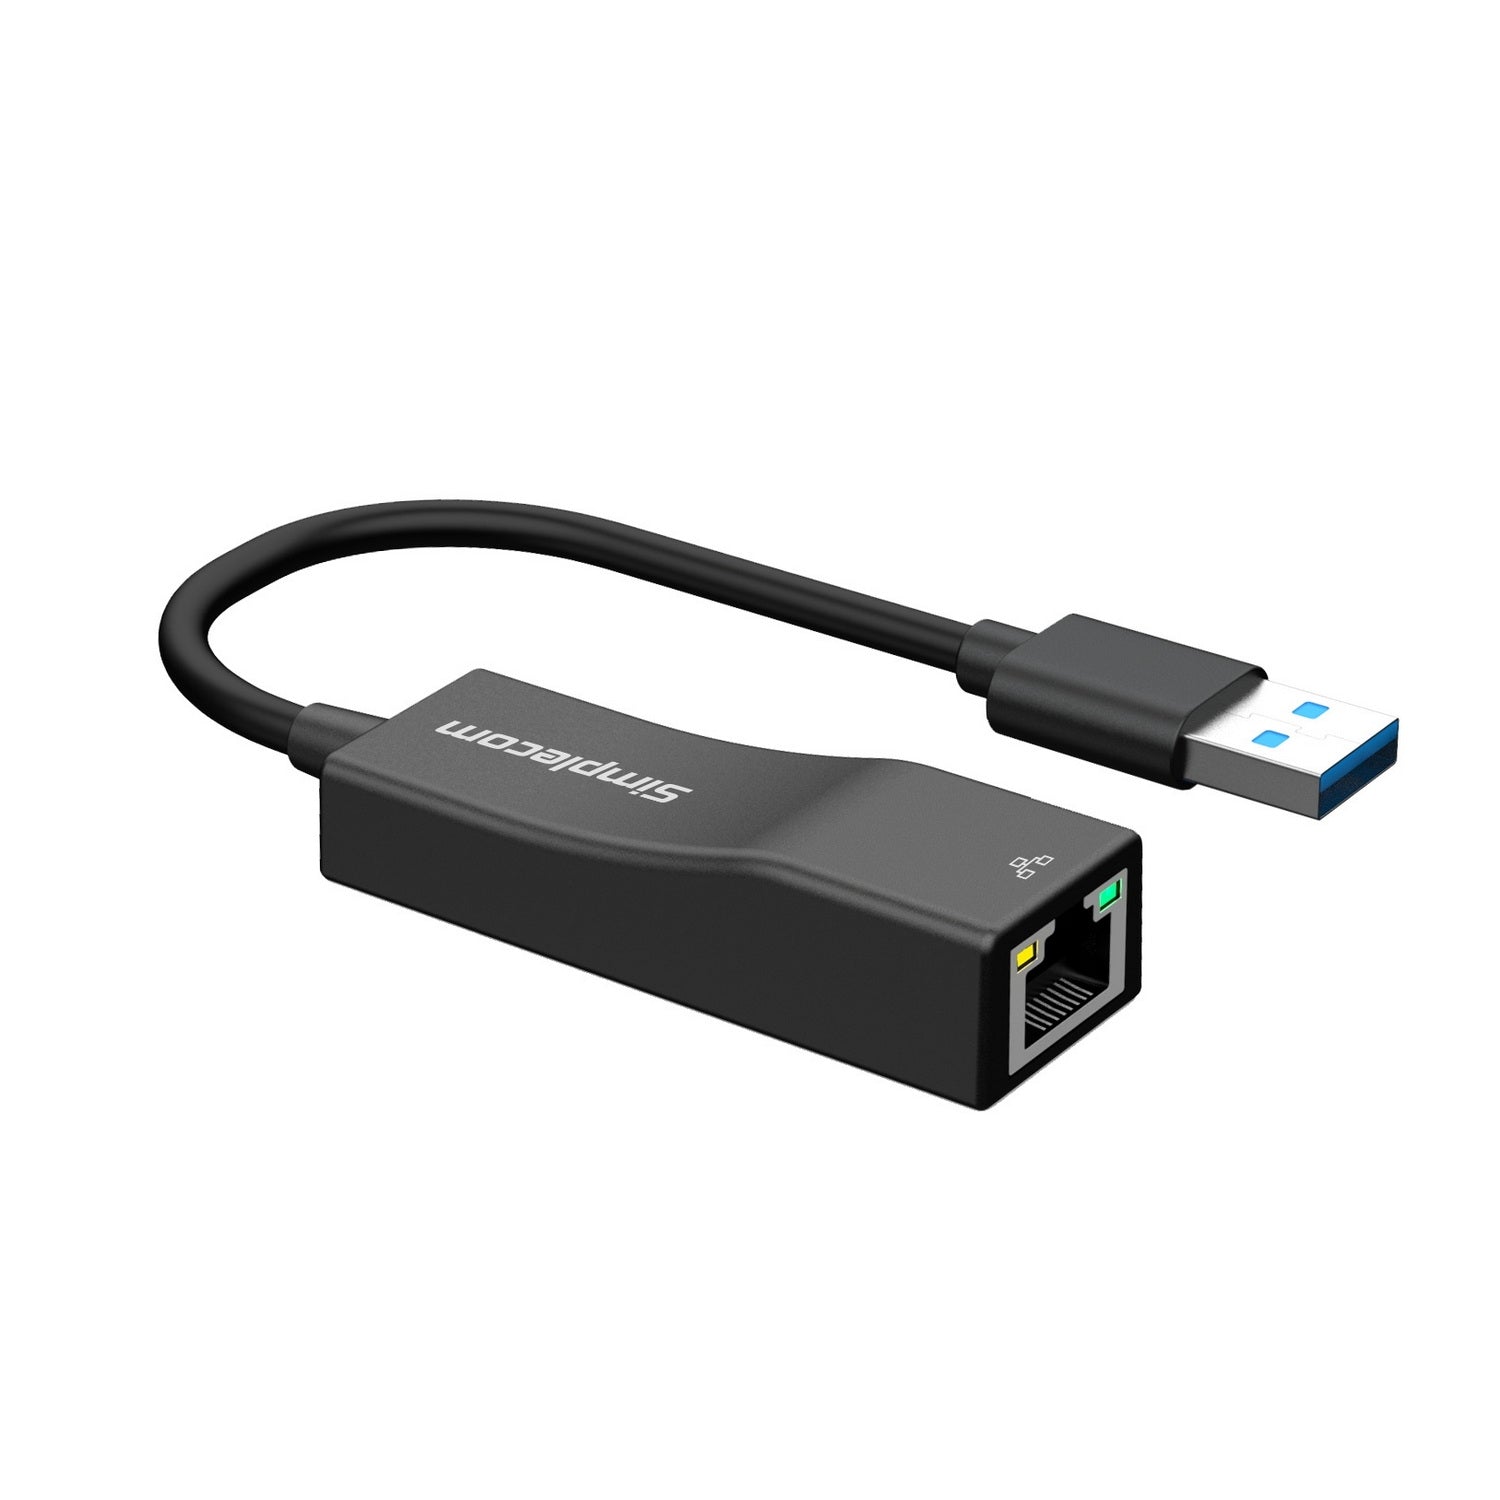 NU302 SuperSpeed USB 3.0 to RJ45 Gigabit 1000Mbps Ethernet Network Adapter